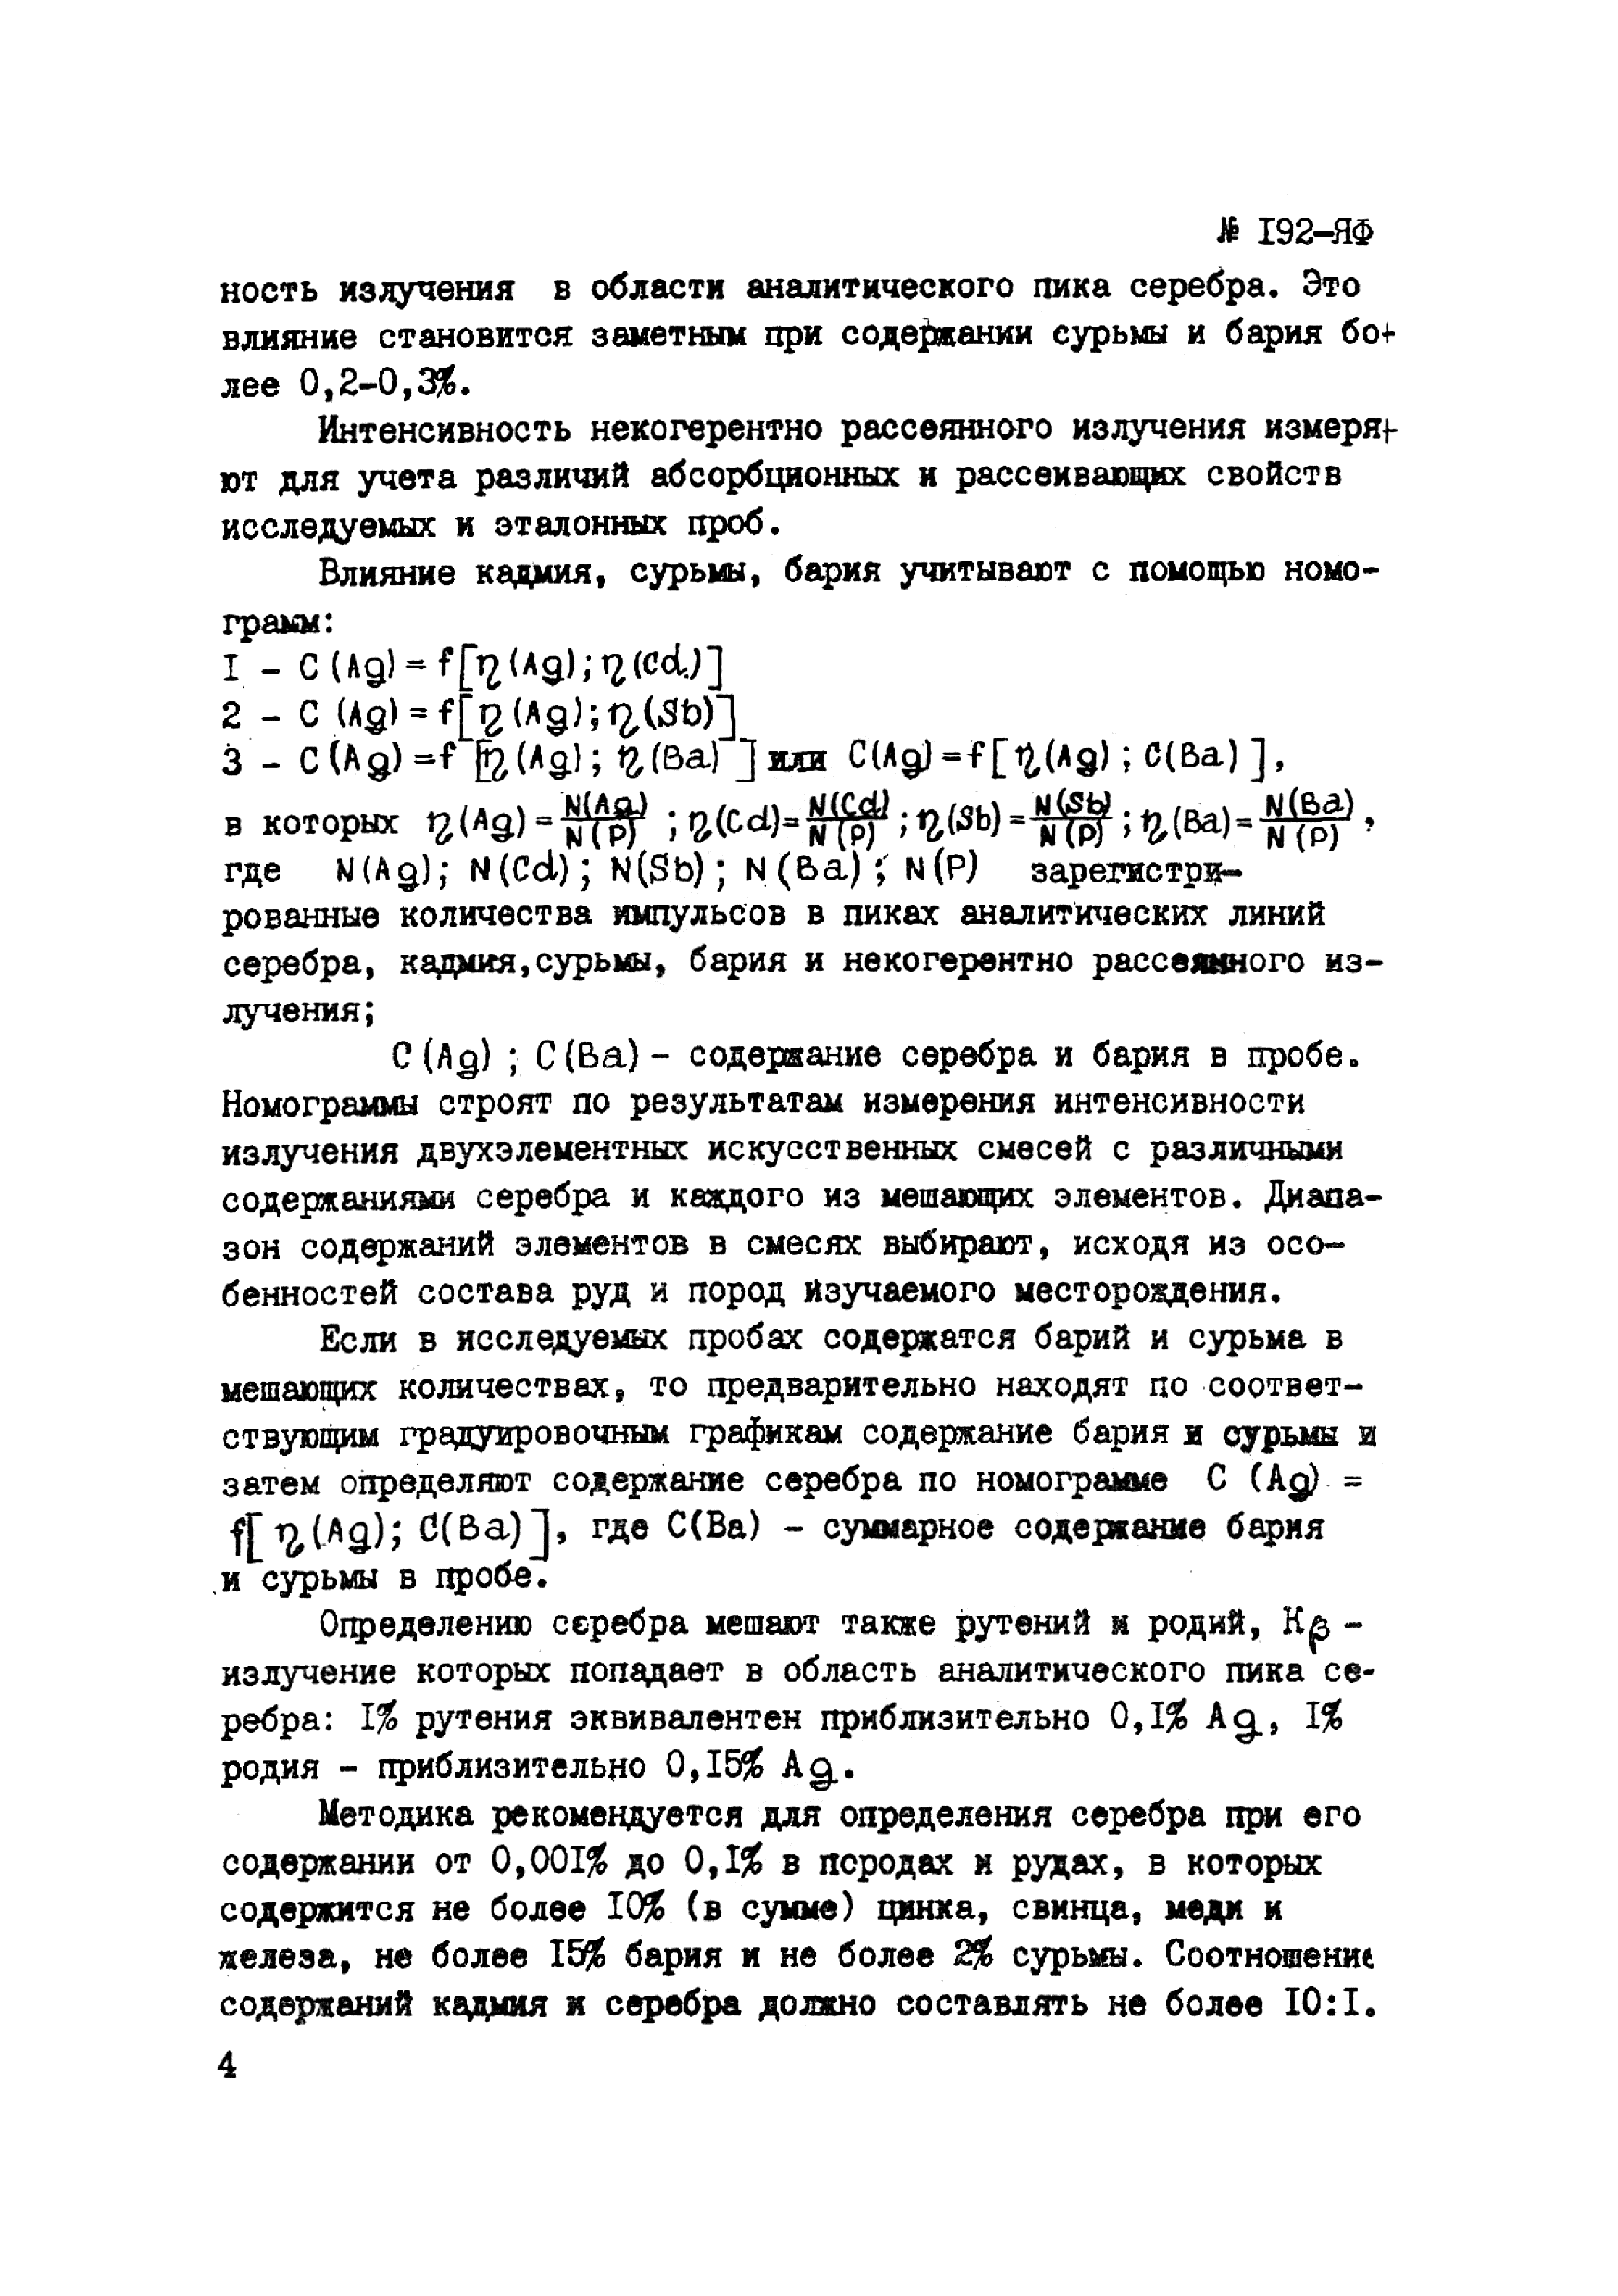 Инструкция НСАМ 192-ЯФ